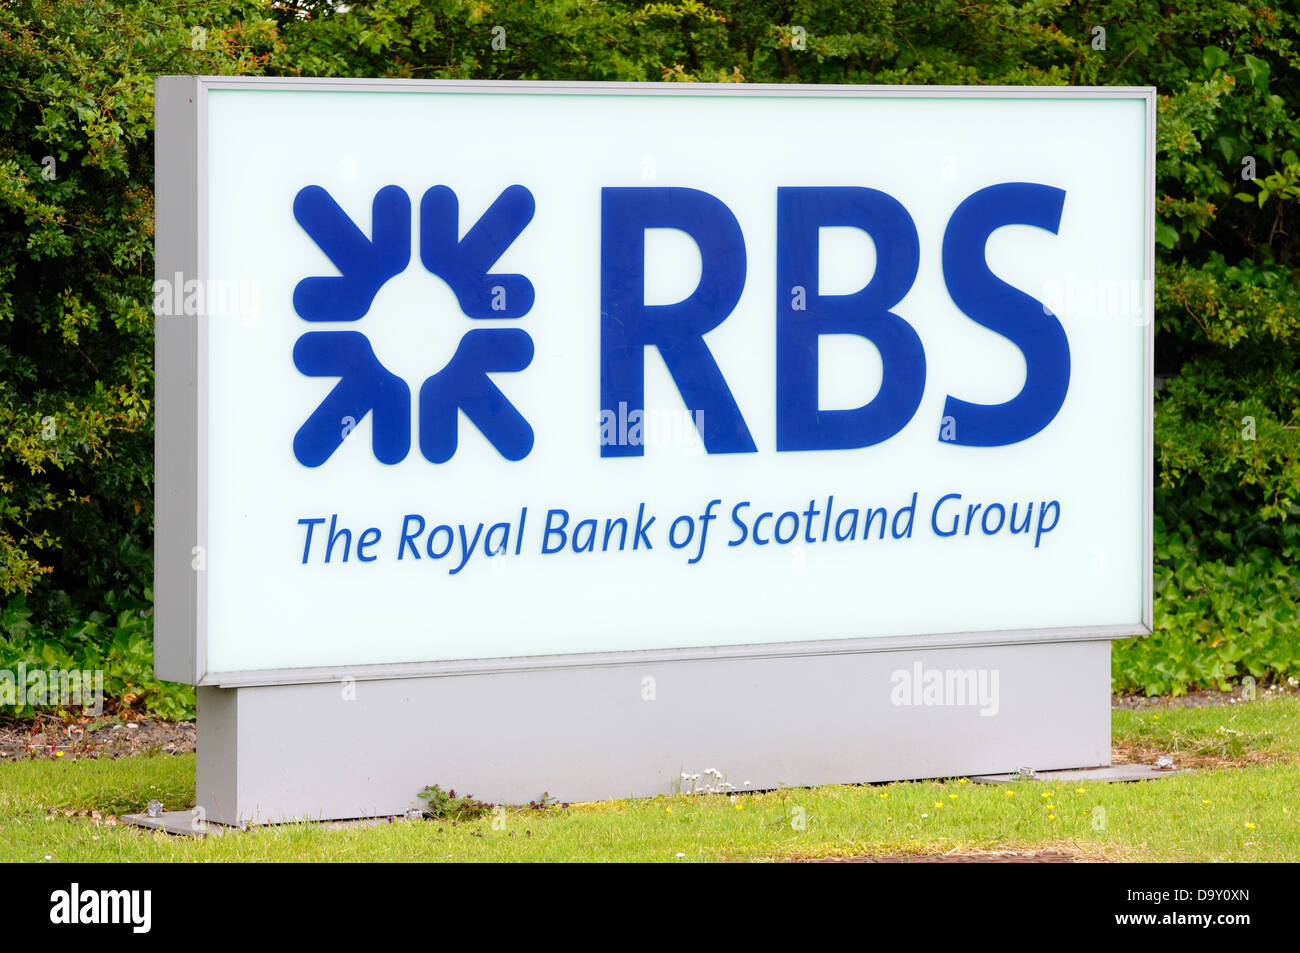 Une enseigne lumineuse Greenock's Royal Bank of Scotland's centre hypothécaire à Greenock, Scotland, UK Banque D'Images